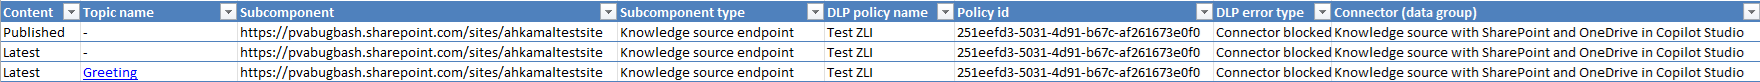 Schermopname van een gedownload Excel-bestand met details van schendingen van het DLP-beleid, inclusief de HTTP-connector.